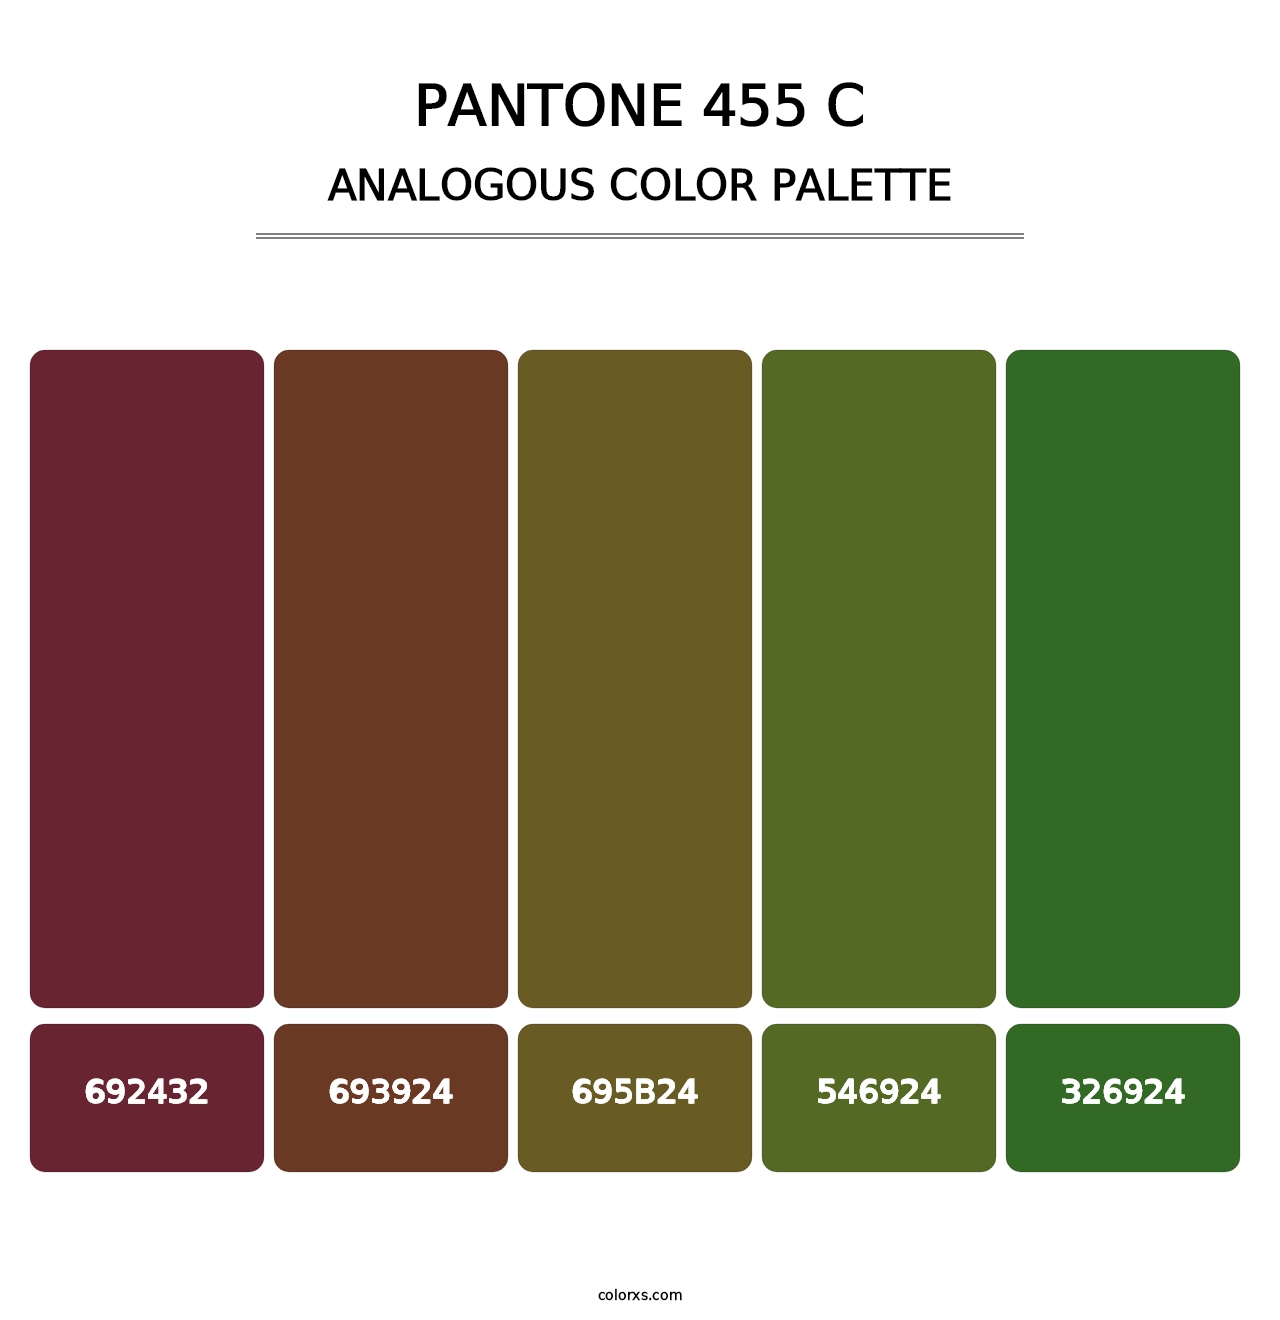 PANTONE 455 C - Analogous Color Palette